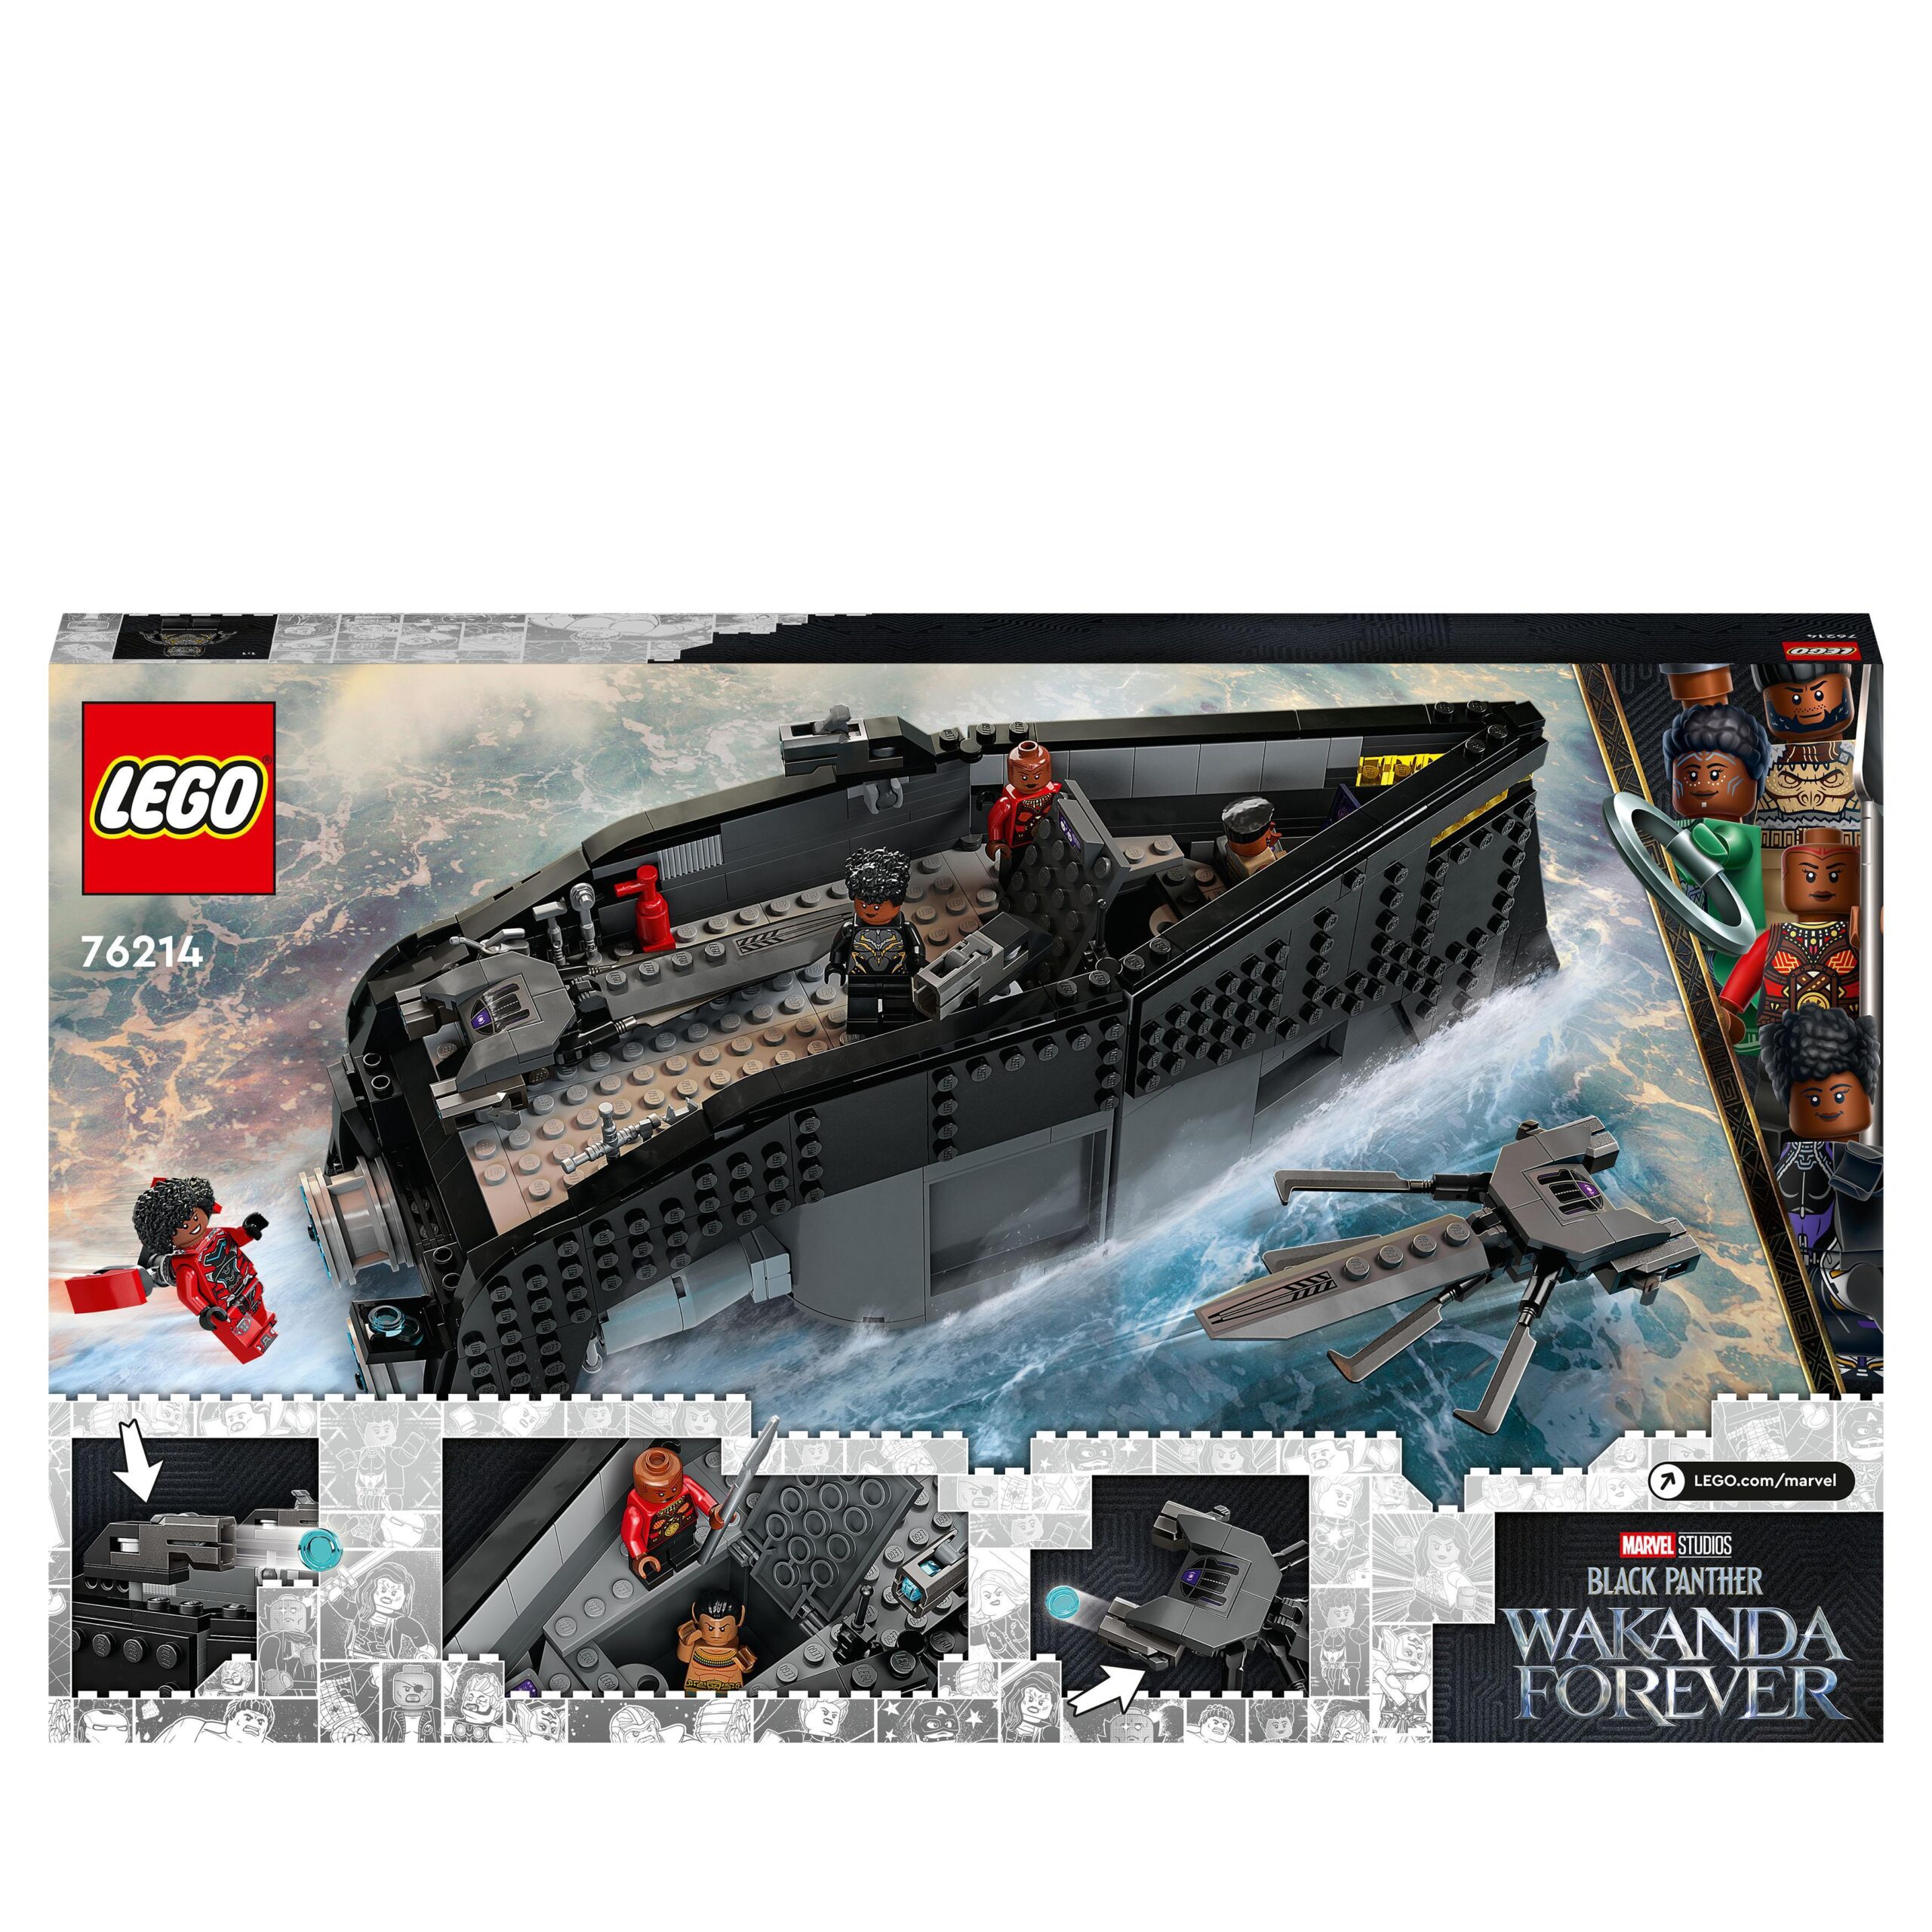 Lego marvel 76214 black panther: guerra sull’acqua! giochi per bambini con nave giocattolo, supereroi dal film wakanda forever - LEGO SUPER HEROES, Avengers, Lego